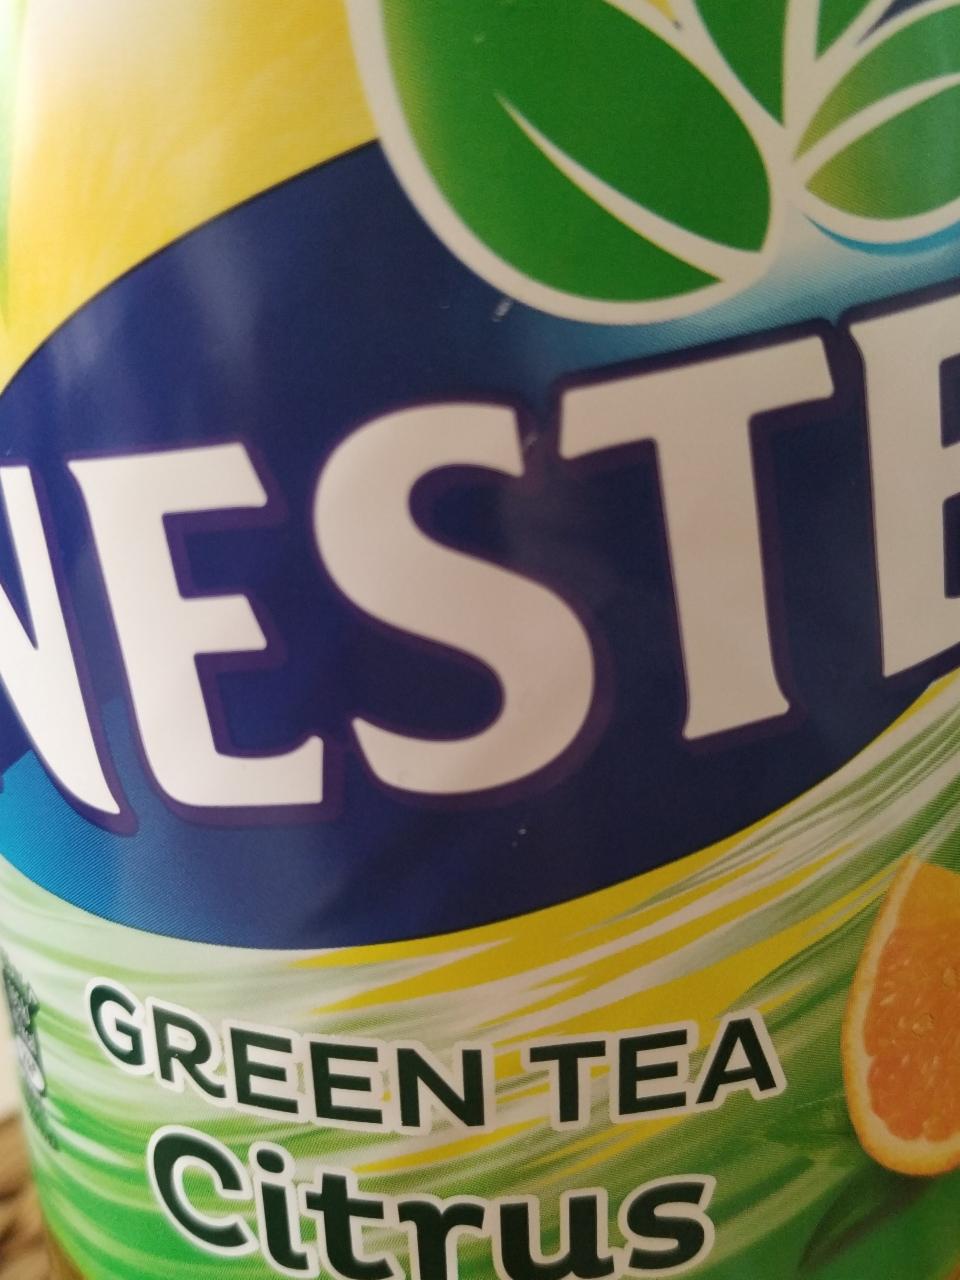 Fotografie - Green tea citrus Nestea